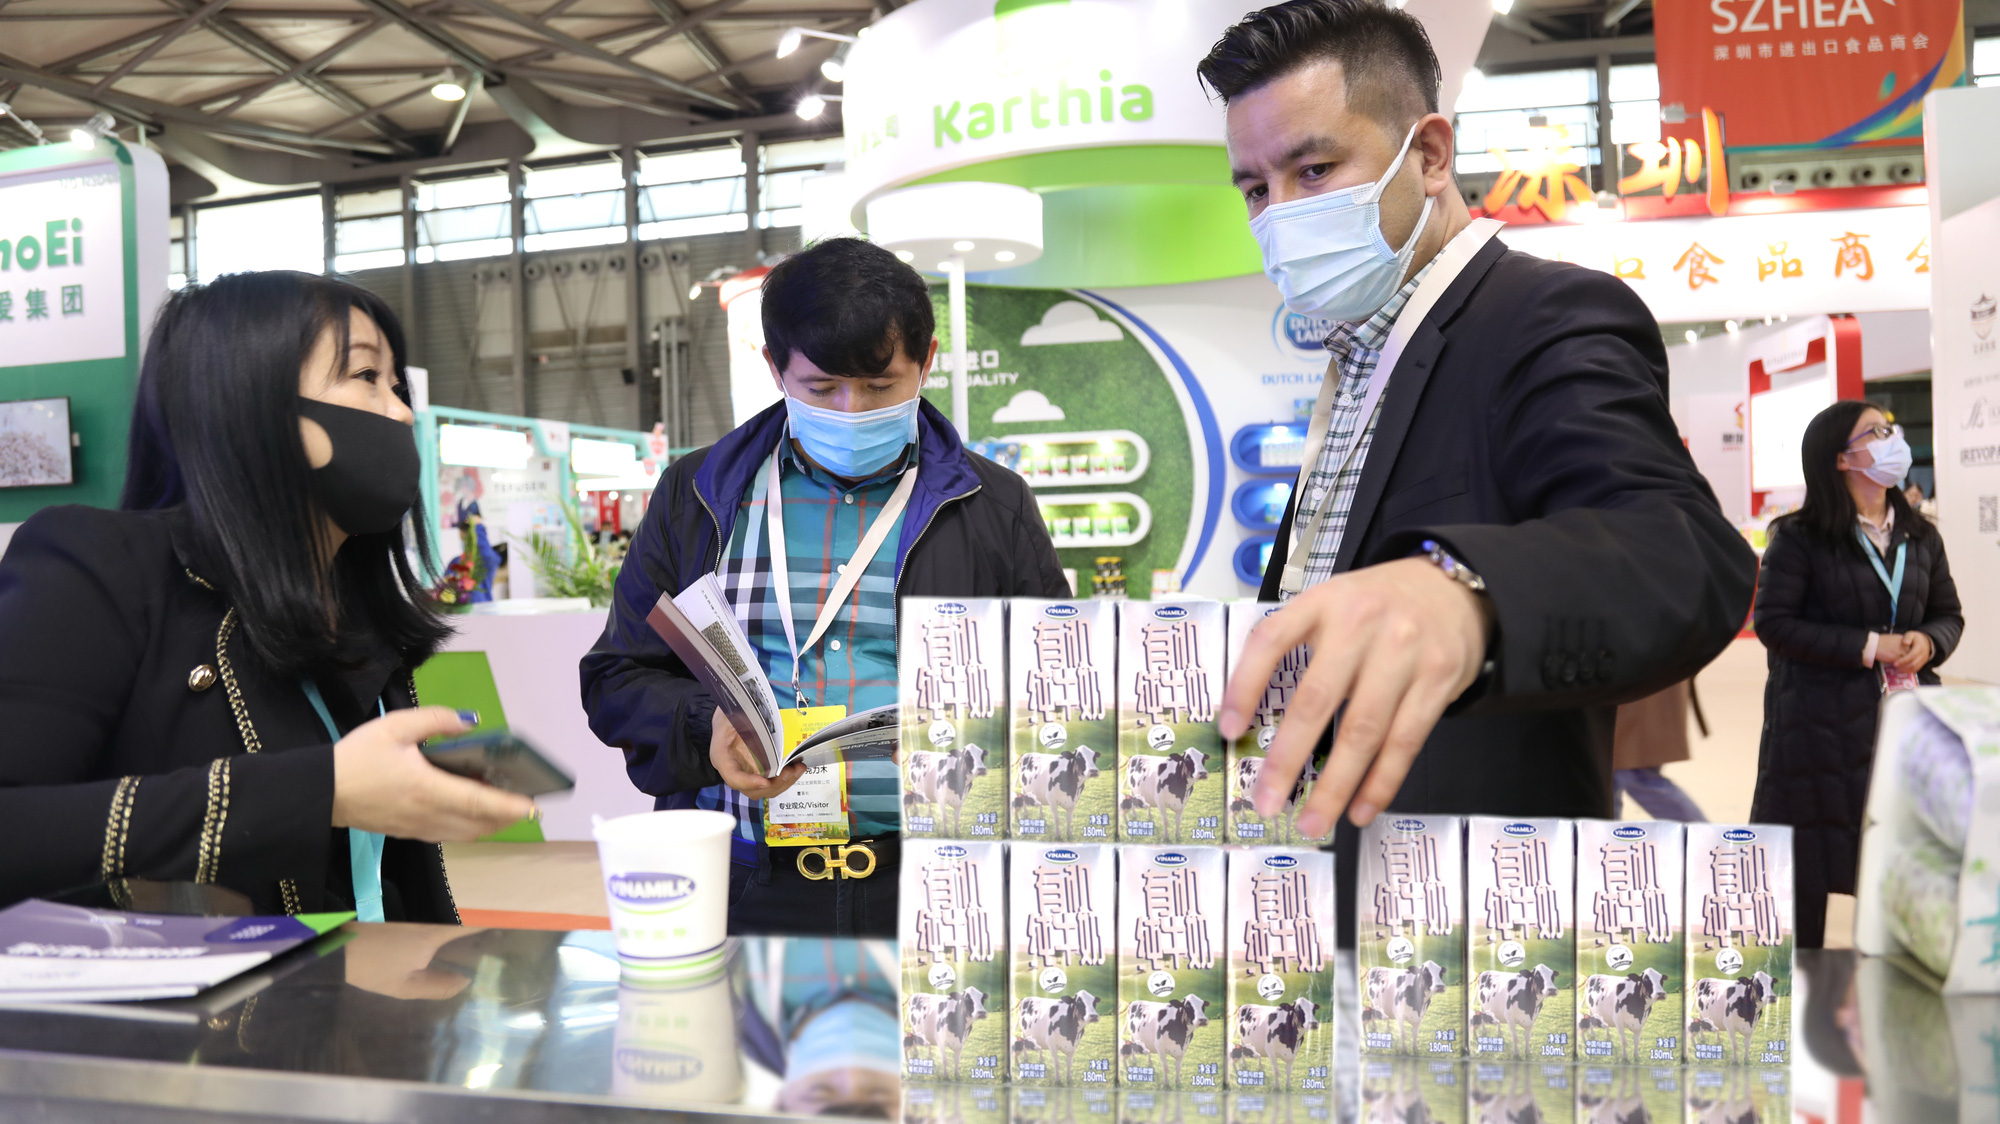 Sữa tươi của Vinamilk chính thức “chào sân” tại triển lãm quốc tế hàng đầu Thượng Hải - Ảnh 1.